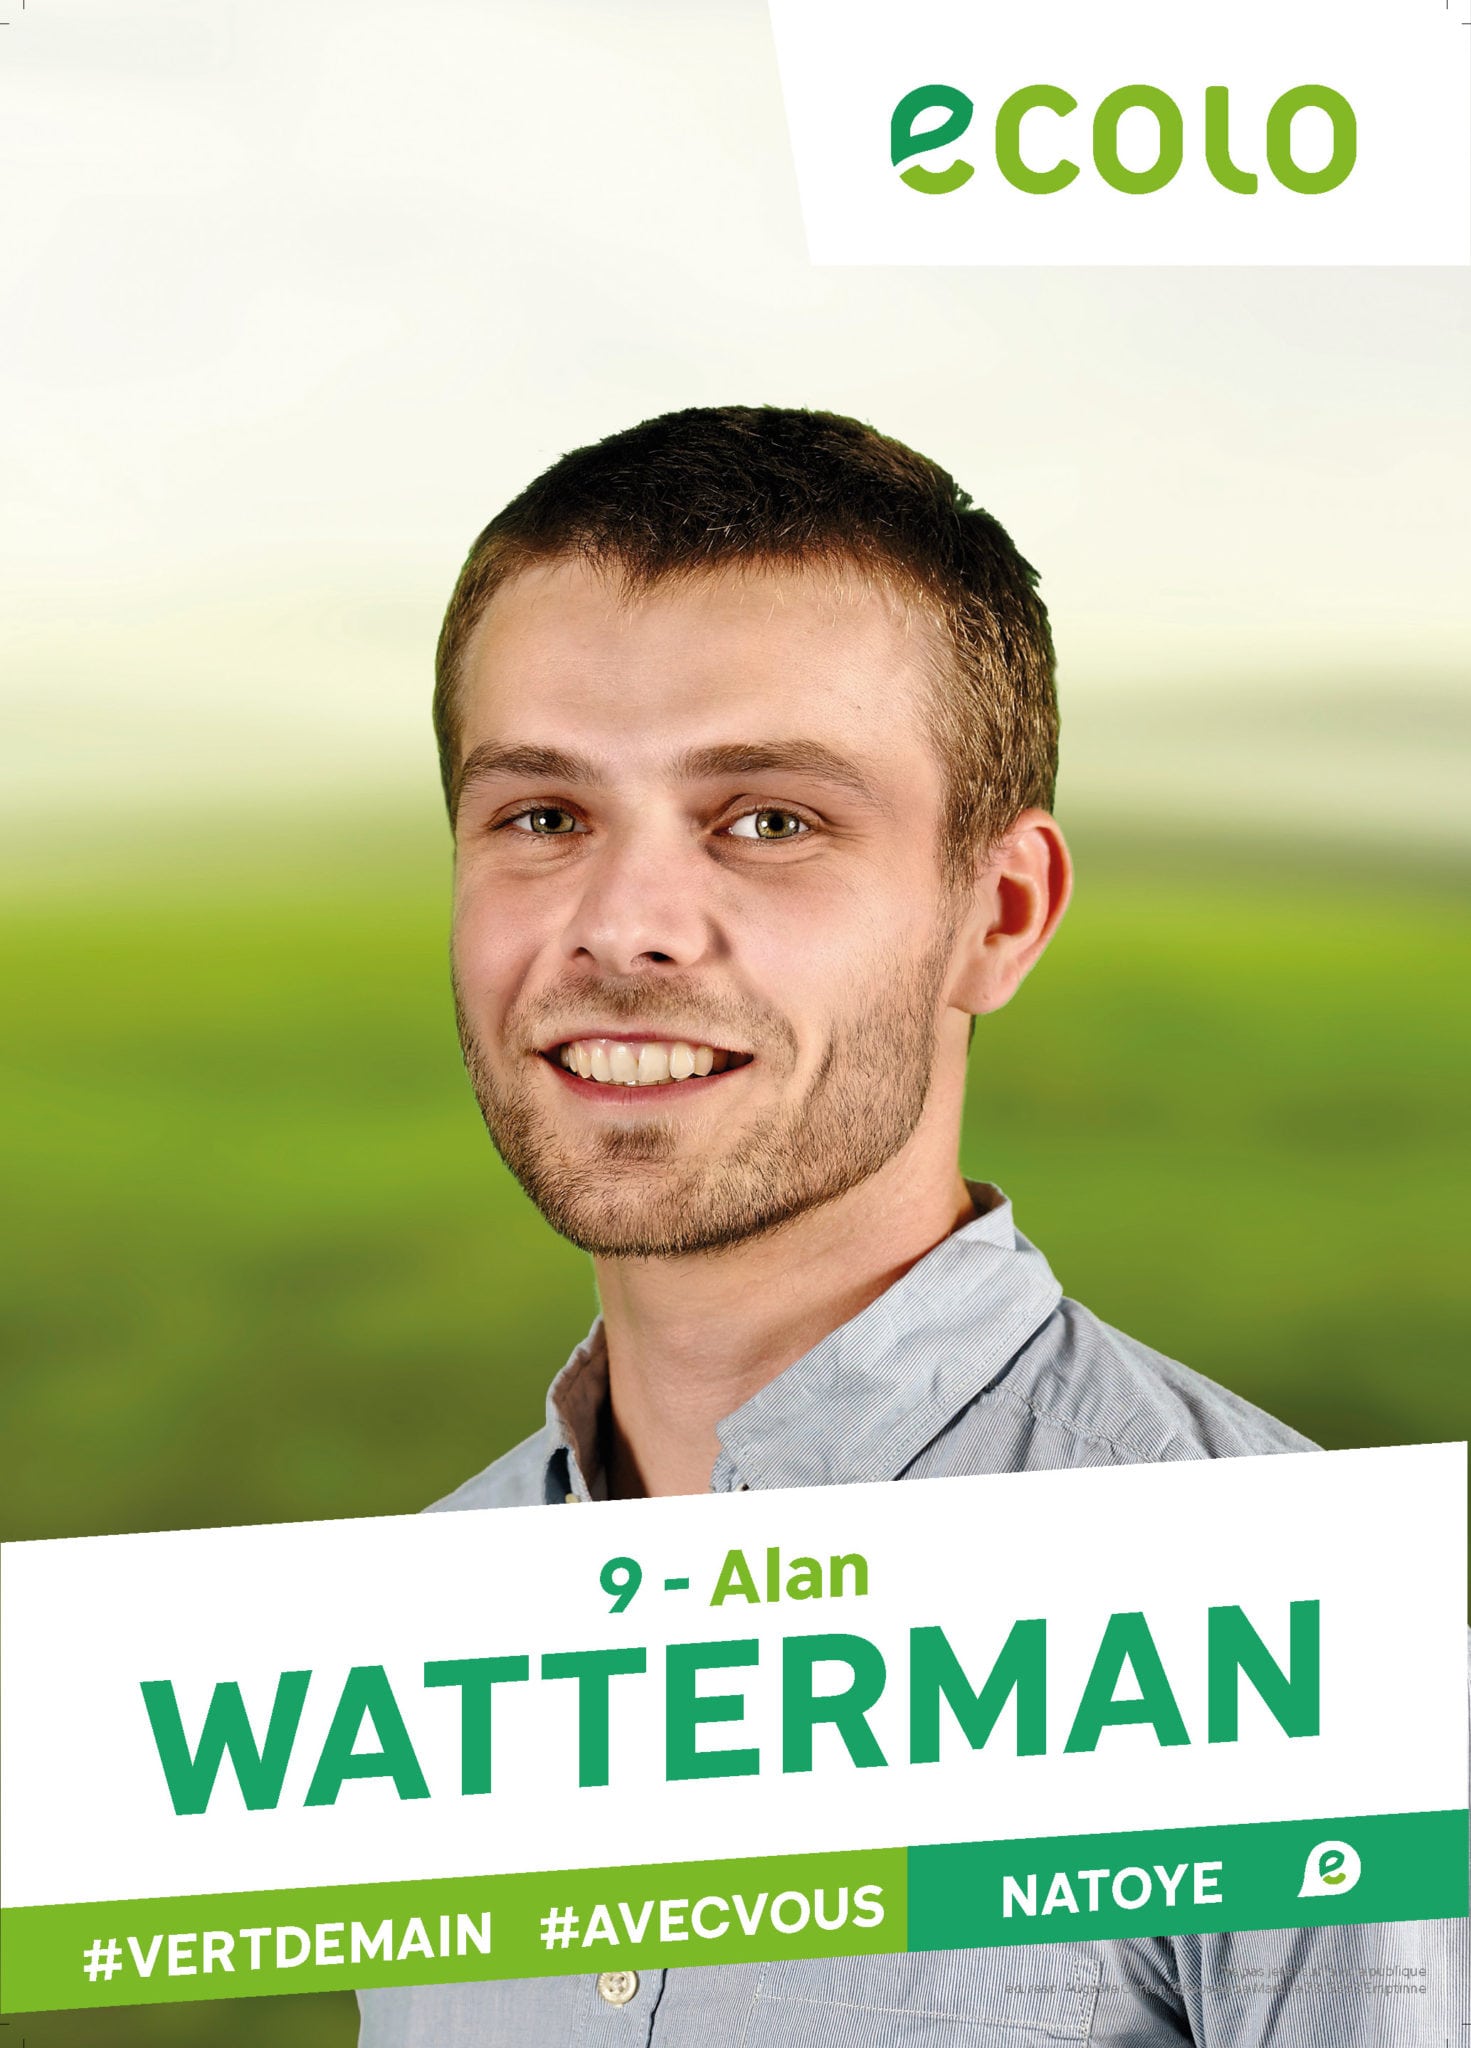 9 - Alan WATTERMAN